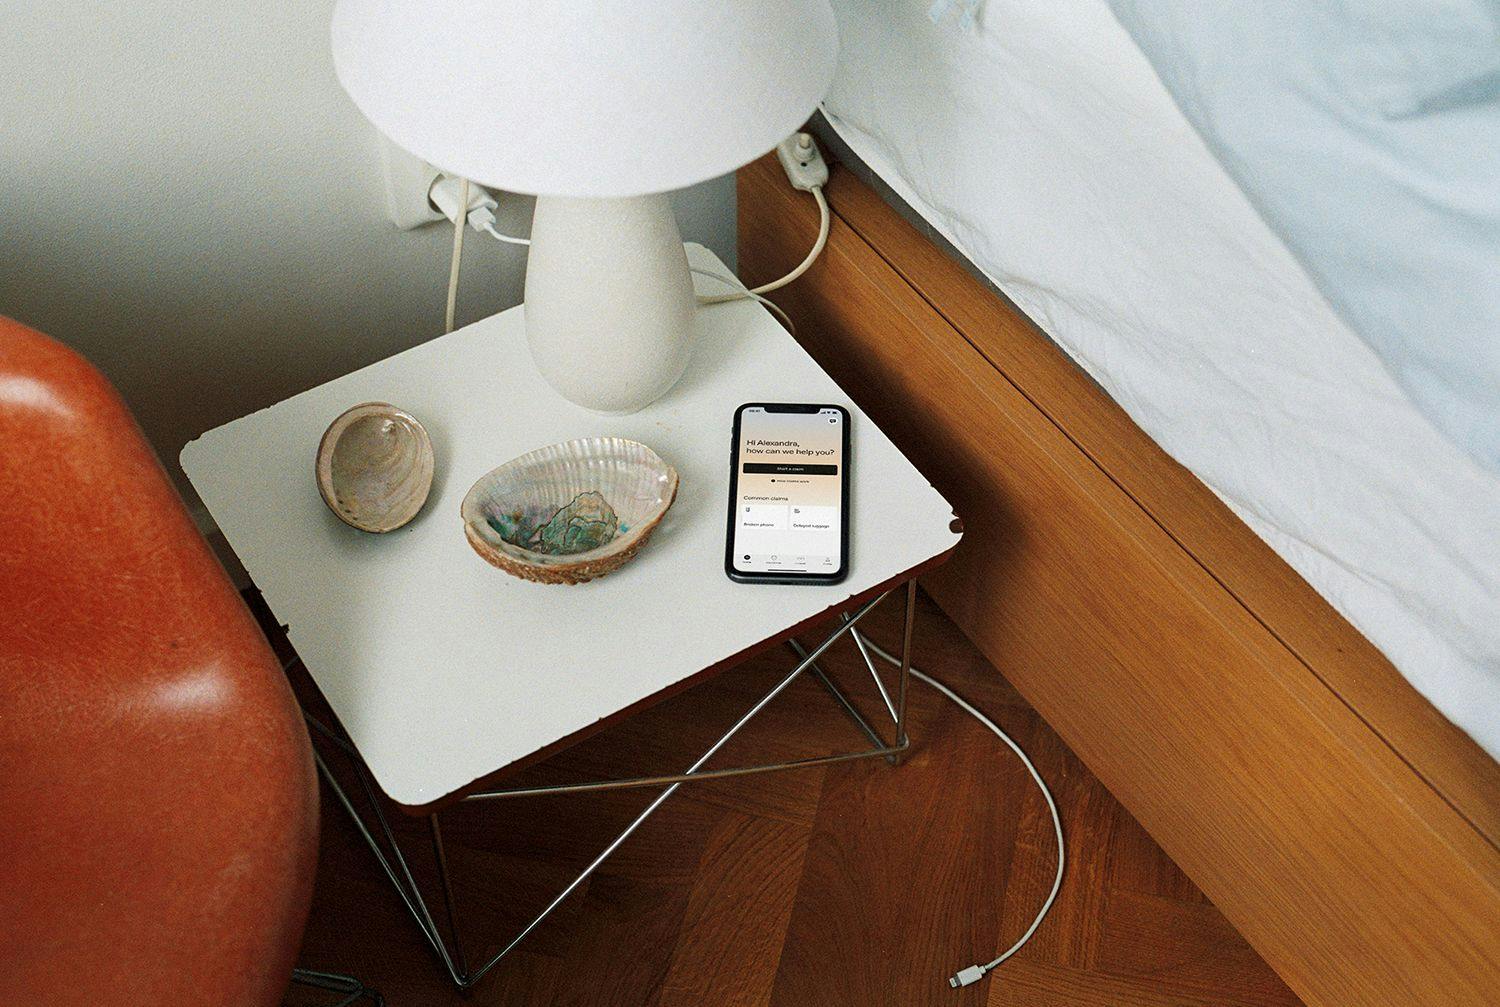 Iphone med Hedvig app liggandes på sovrumsbordet.